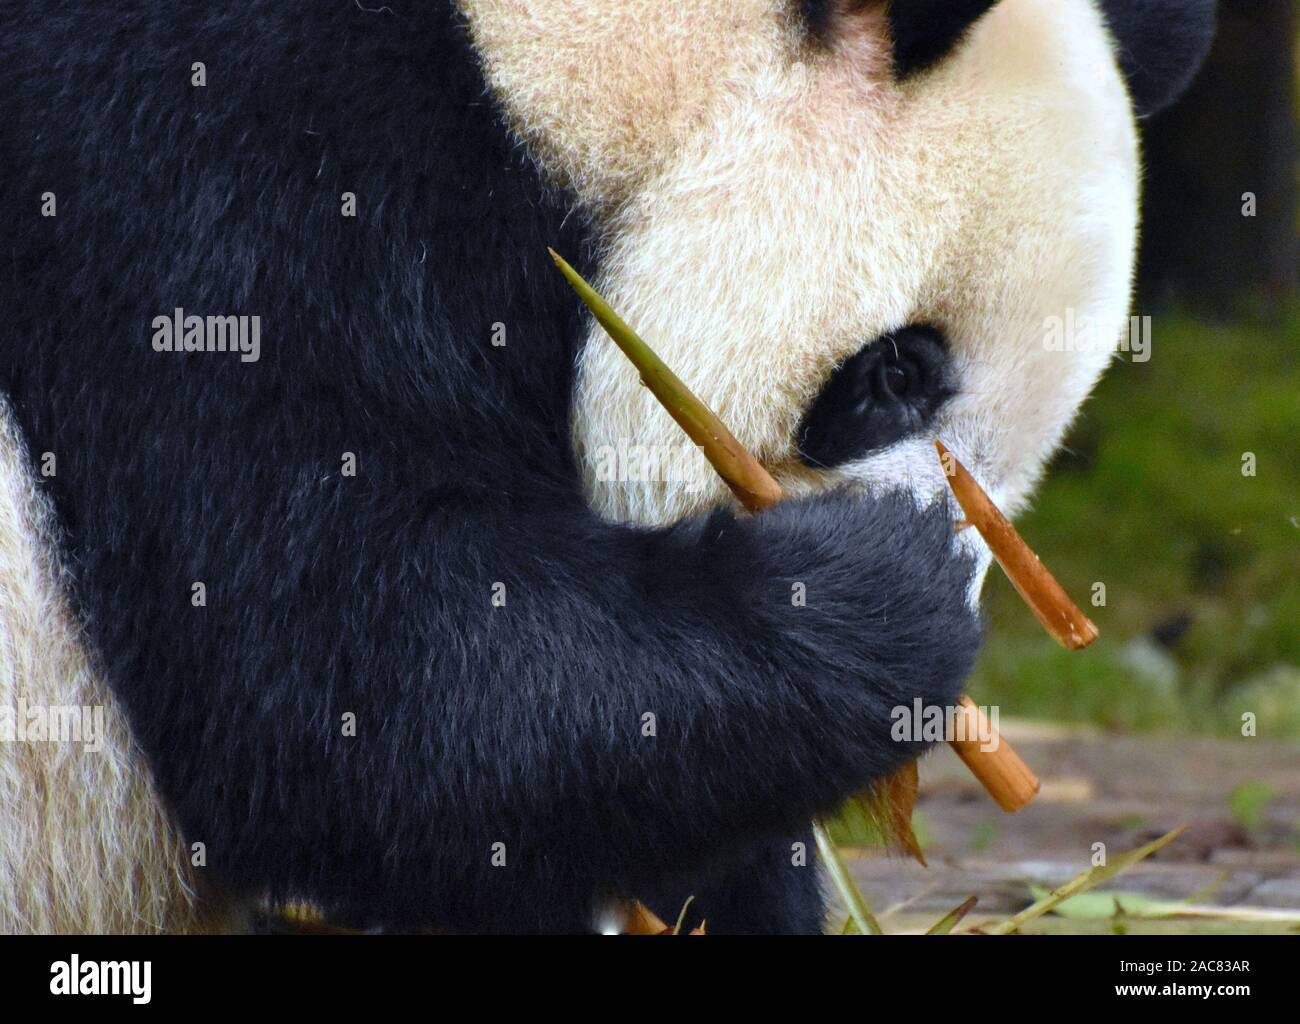 Panda munching on bamboo shoots Stock Photo